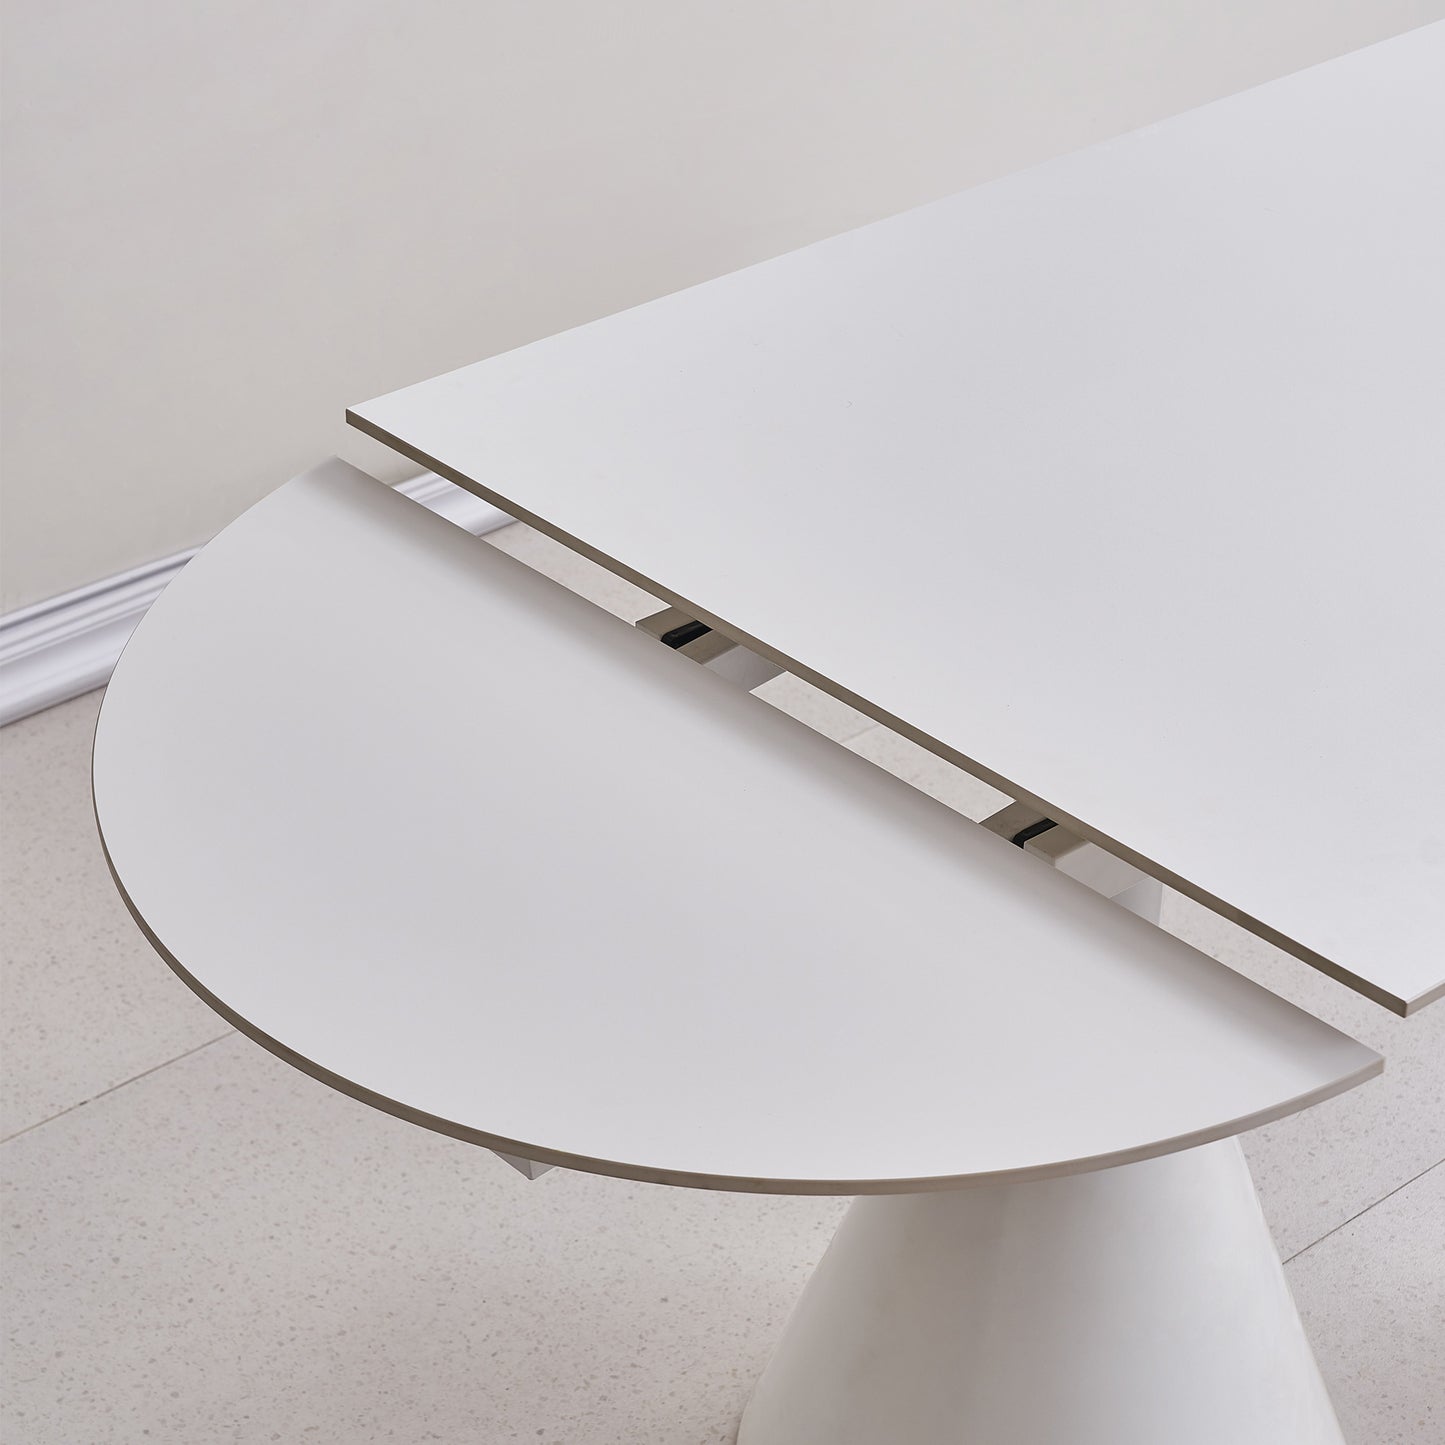 Table de salle à manger blanche extensible ovale moderne de 94,9 po pour 8 personnes avec plateau en pierre frittée et base en acier inoxydable